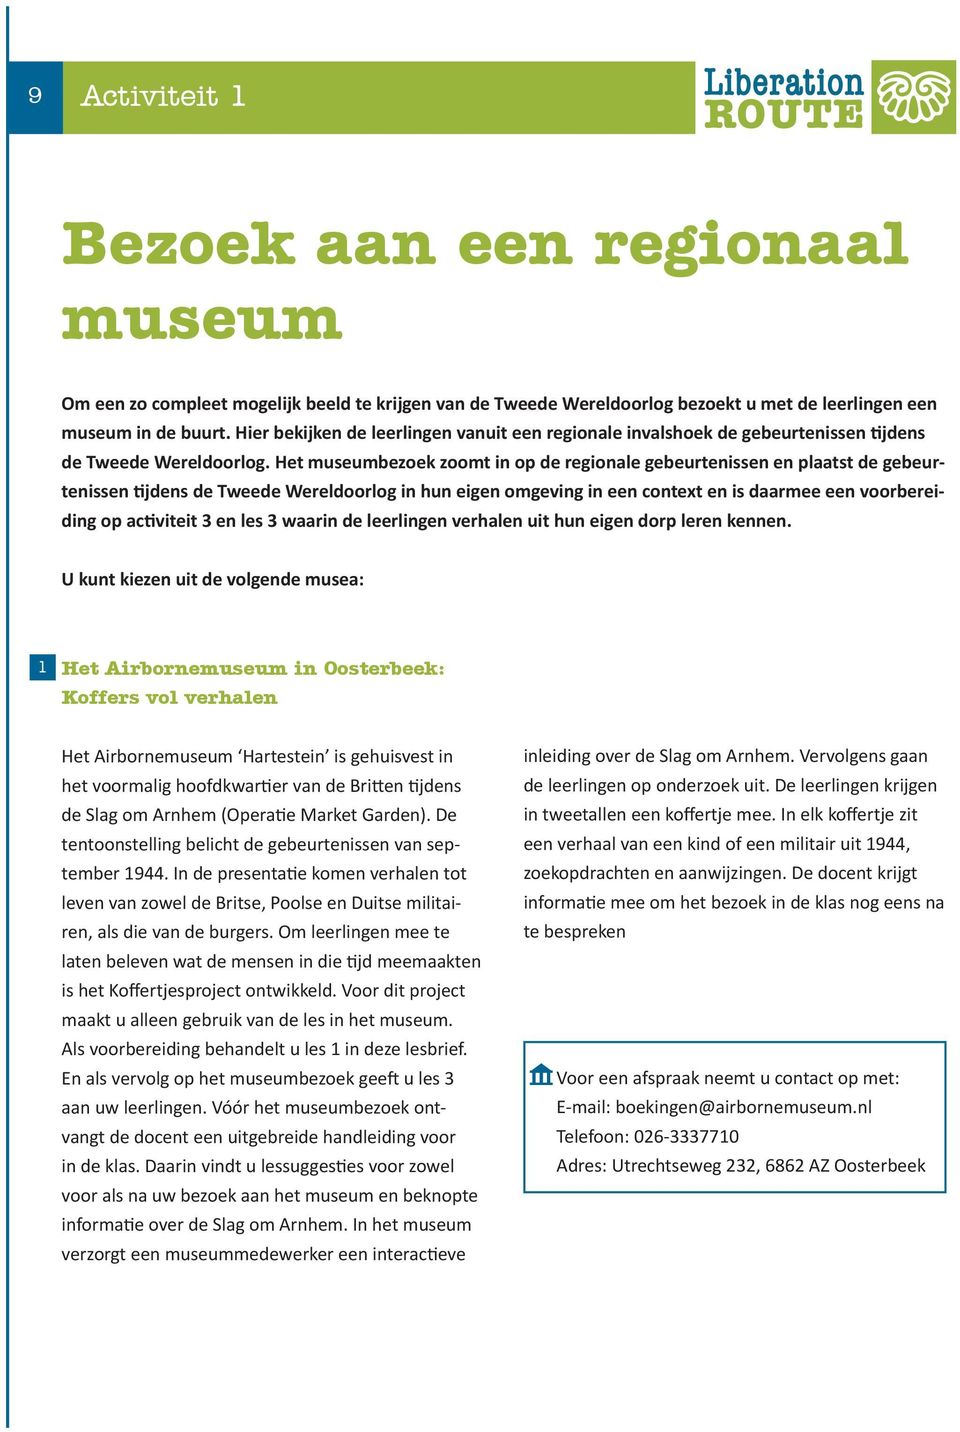 Het museumbezoek zoomt in op de regionale gebeurtenissen en plaatst de gebeurtenissen tijdens de Tweede Wereldoorlog in hun eigen omgeving in een context en is daarmee een voorbereiding op activiteit